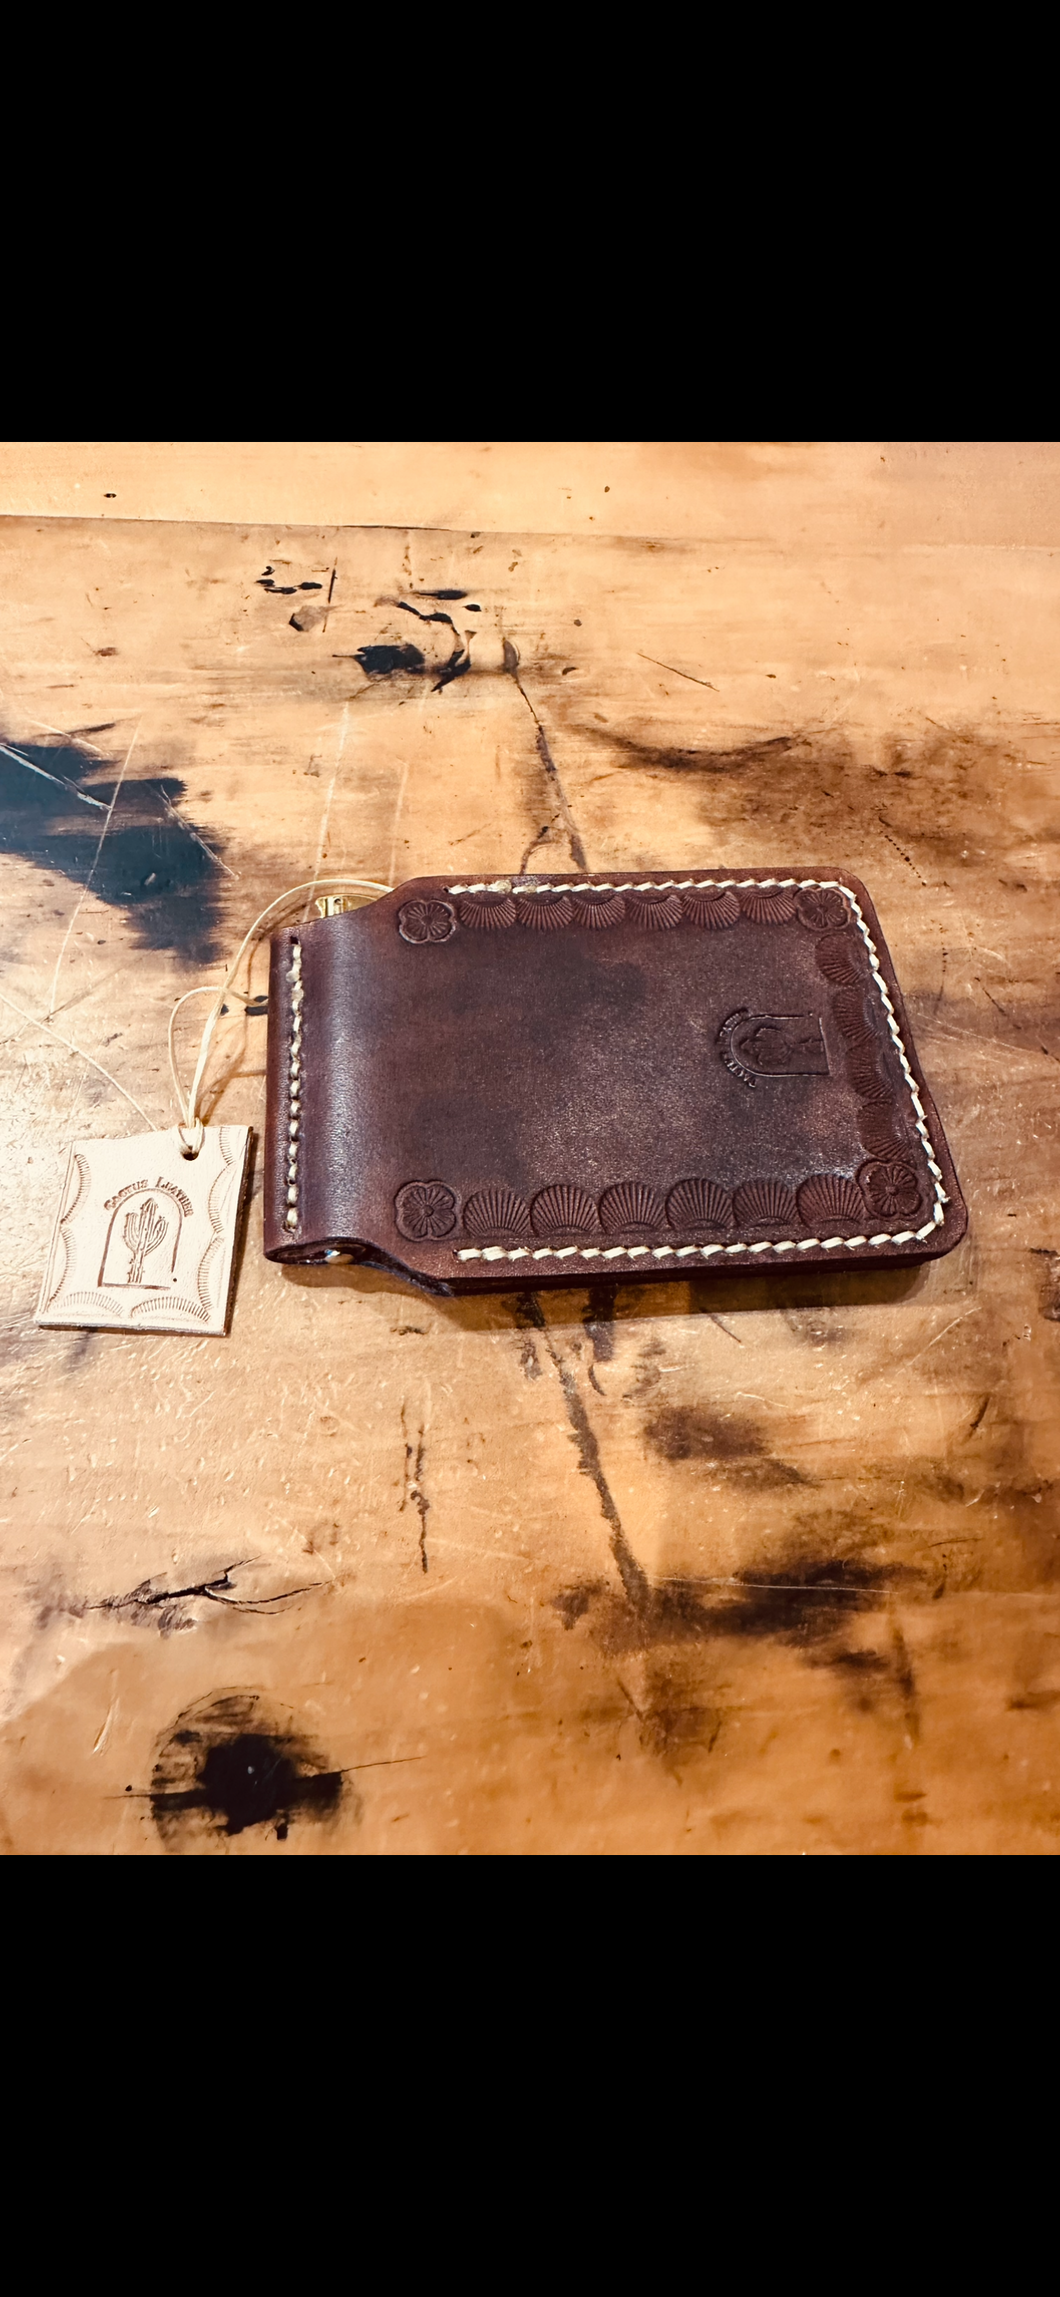 Cactus Leather Wallet, Money Clip